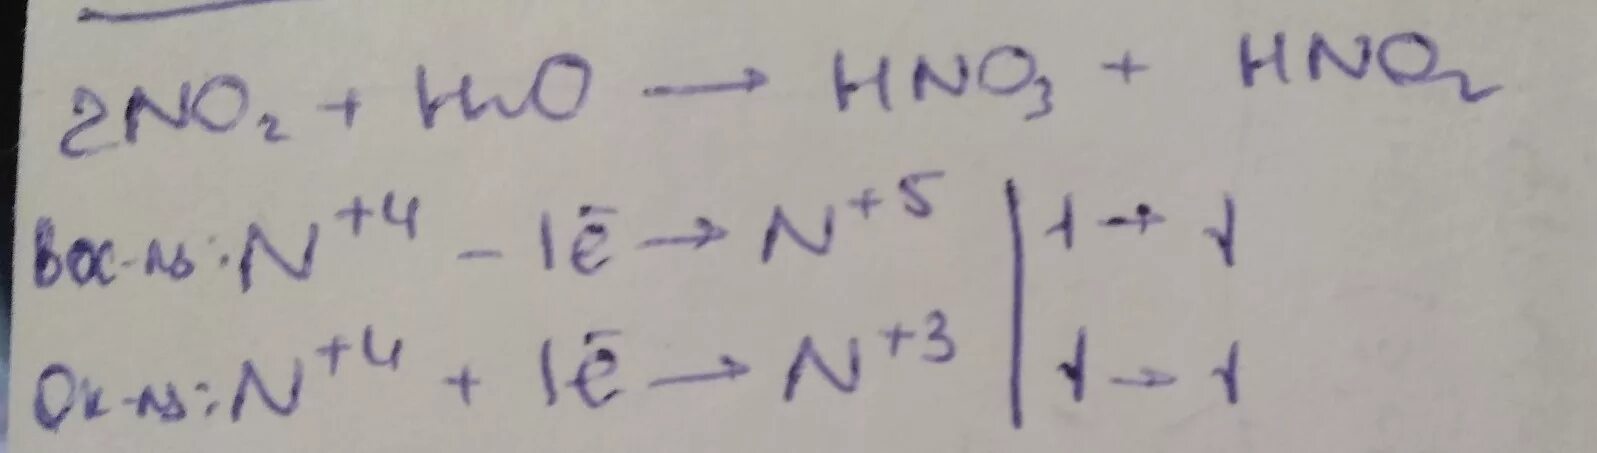 No2 h2o o2 hno3 ОВР. Hno2 hno3 no h2o ОВР. No2 o2 h20 hno3 ОВР. 2no2+h2o hno2+hno3 ОВР. N2 и o2 продукты реакции